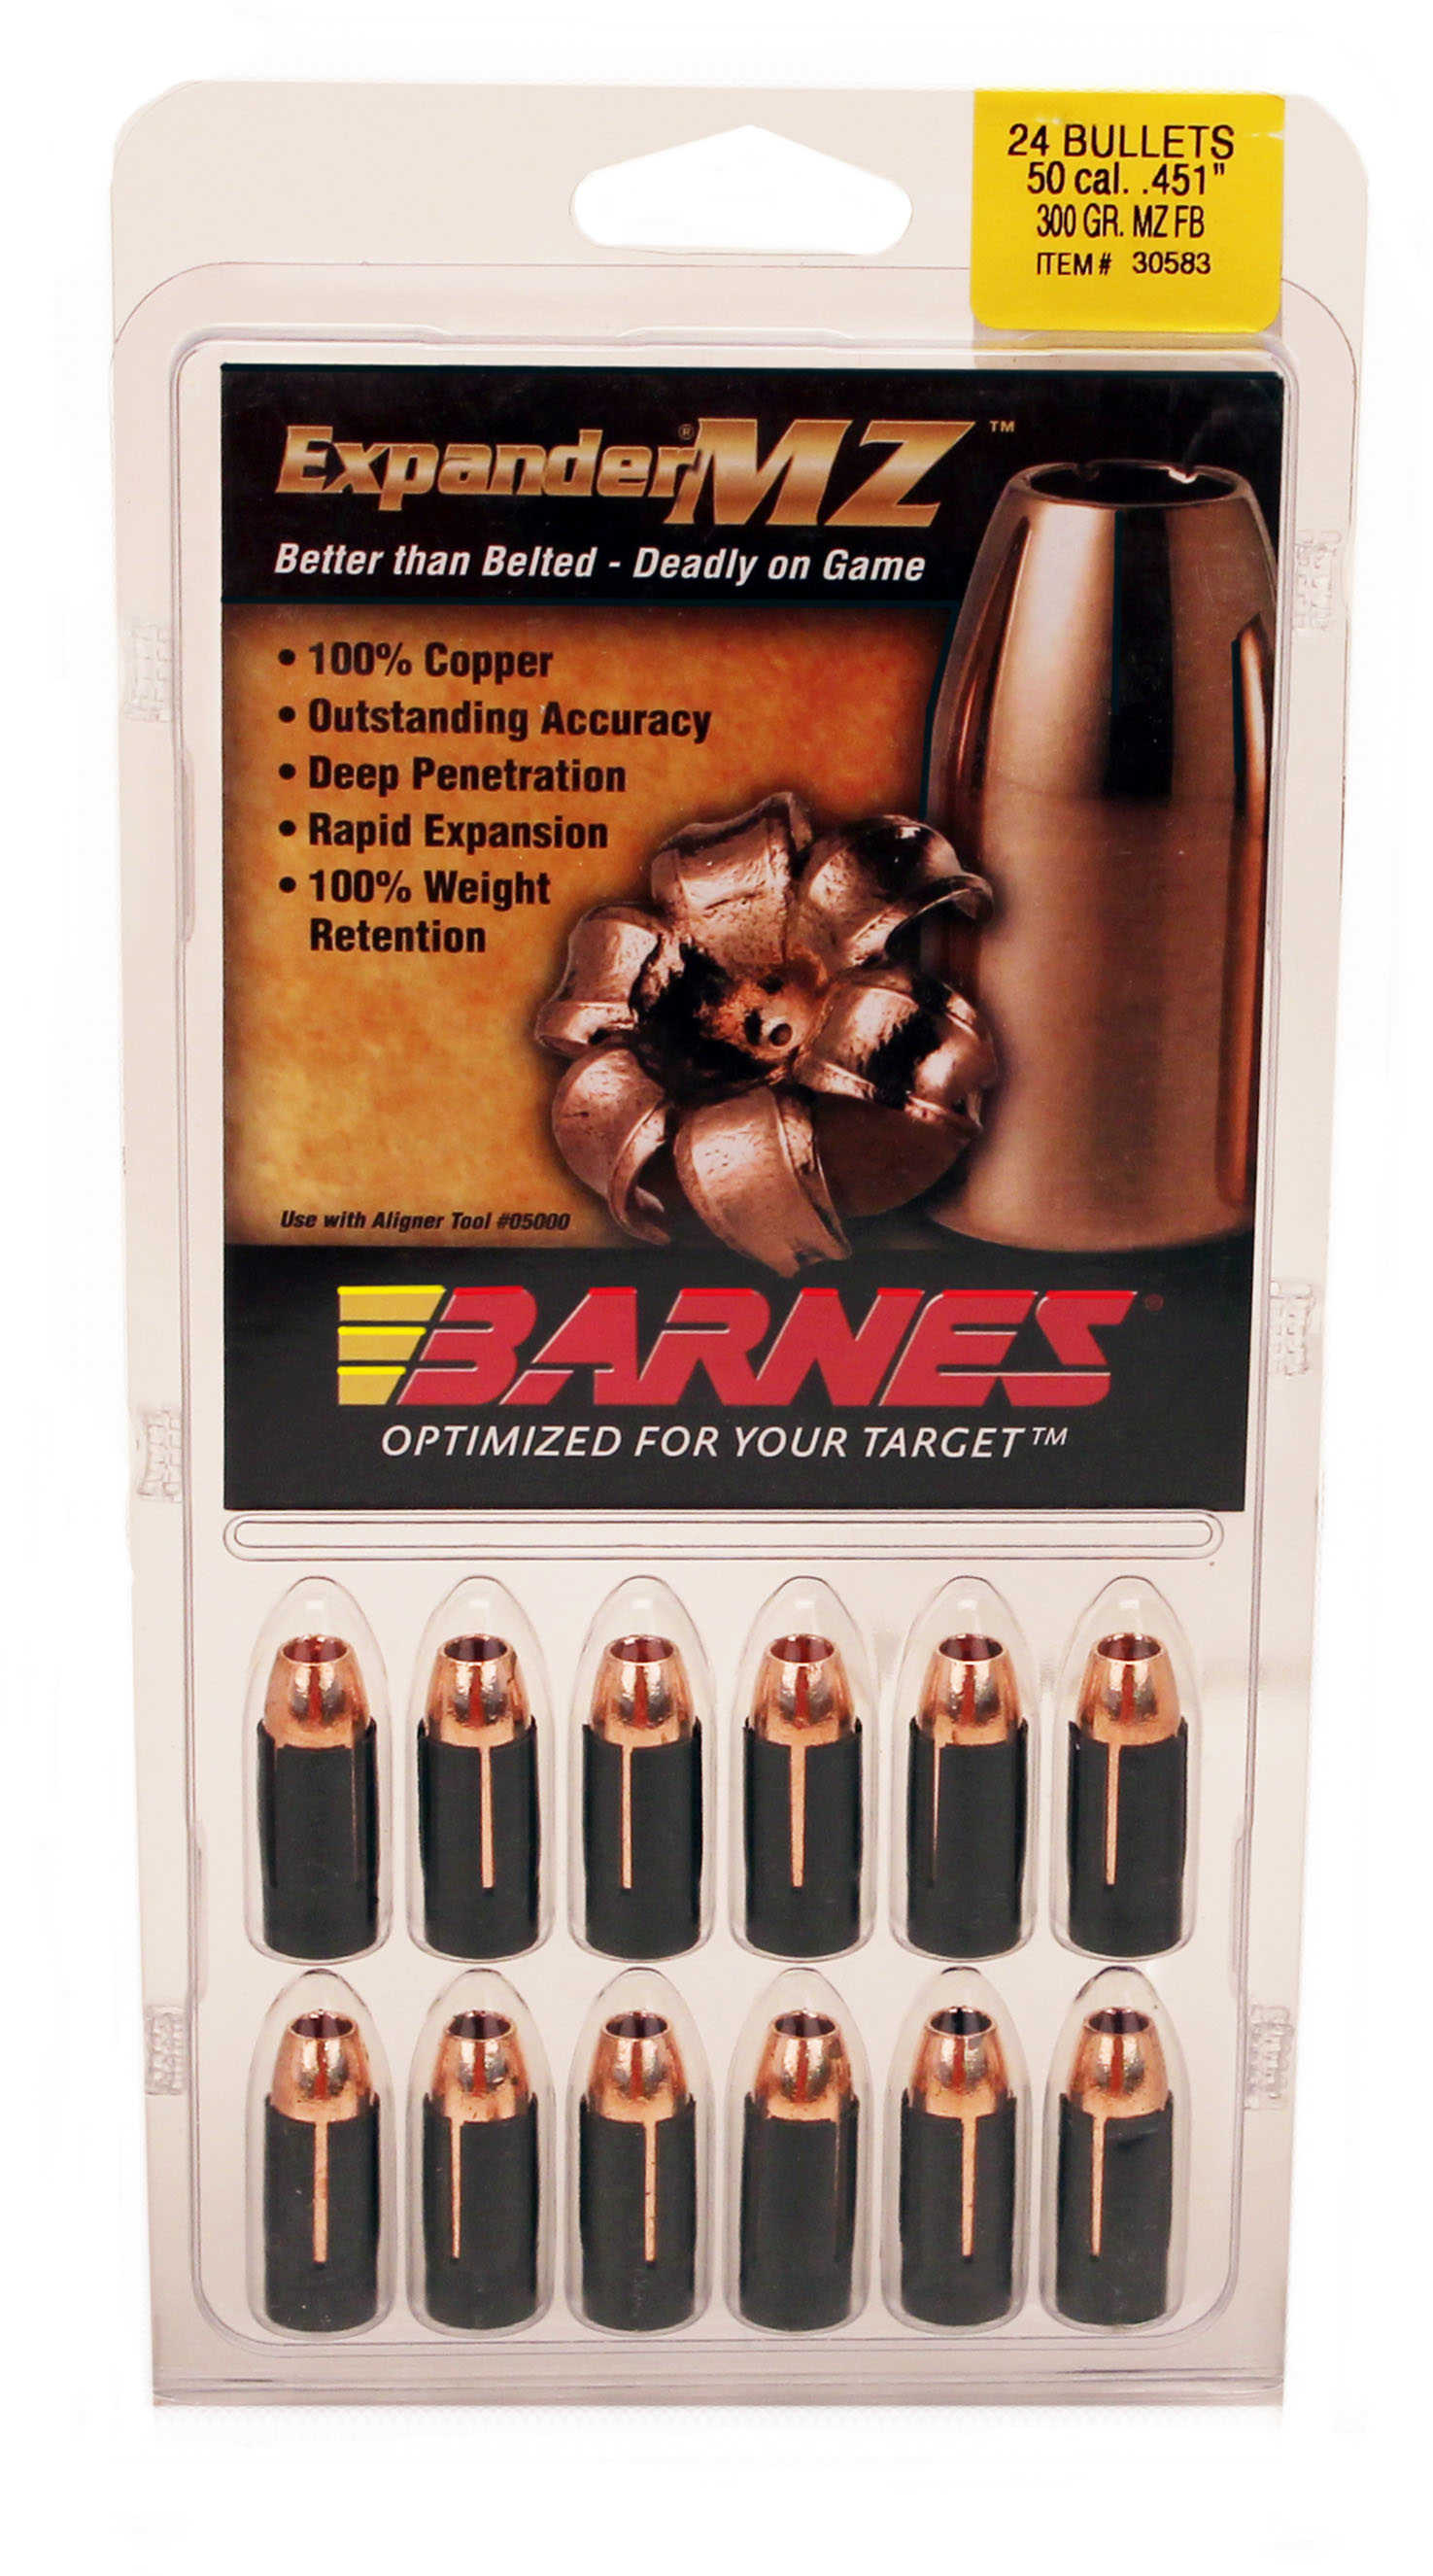 Barnes Bullets 50 Caliber 300 Grain Expander Muzzleloader (Per 24) 45162